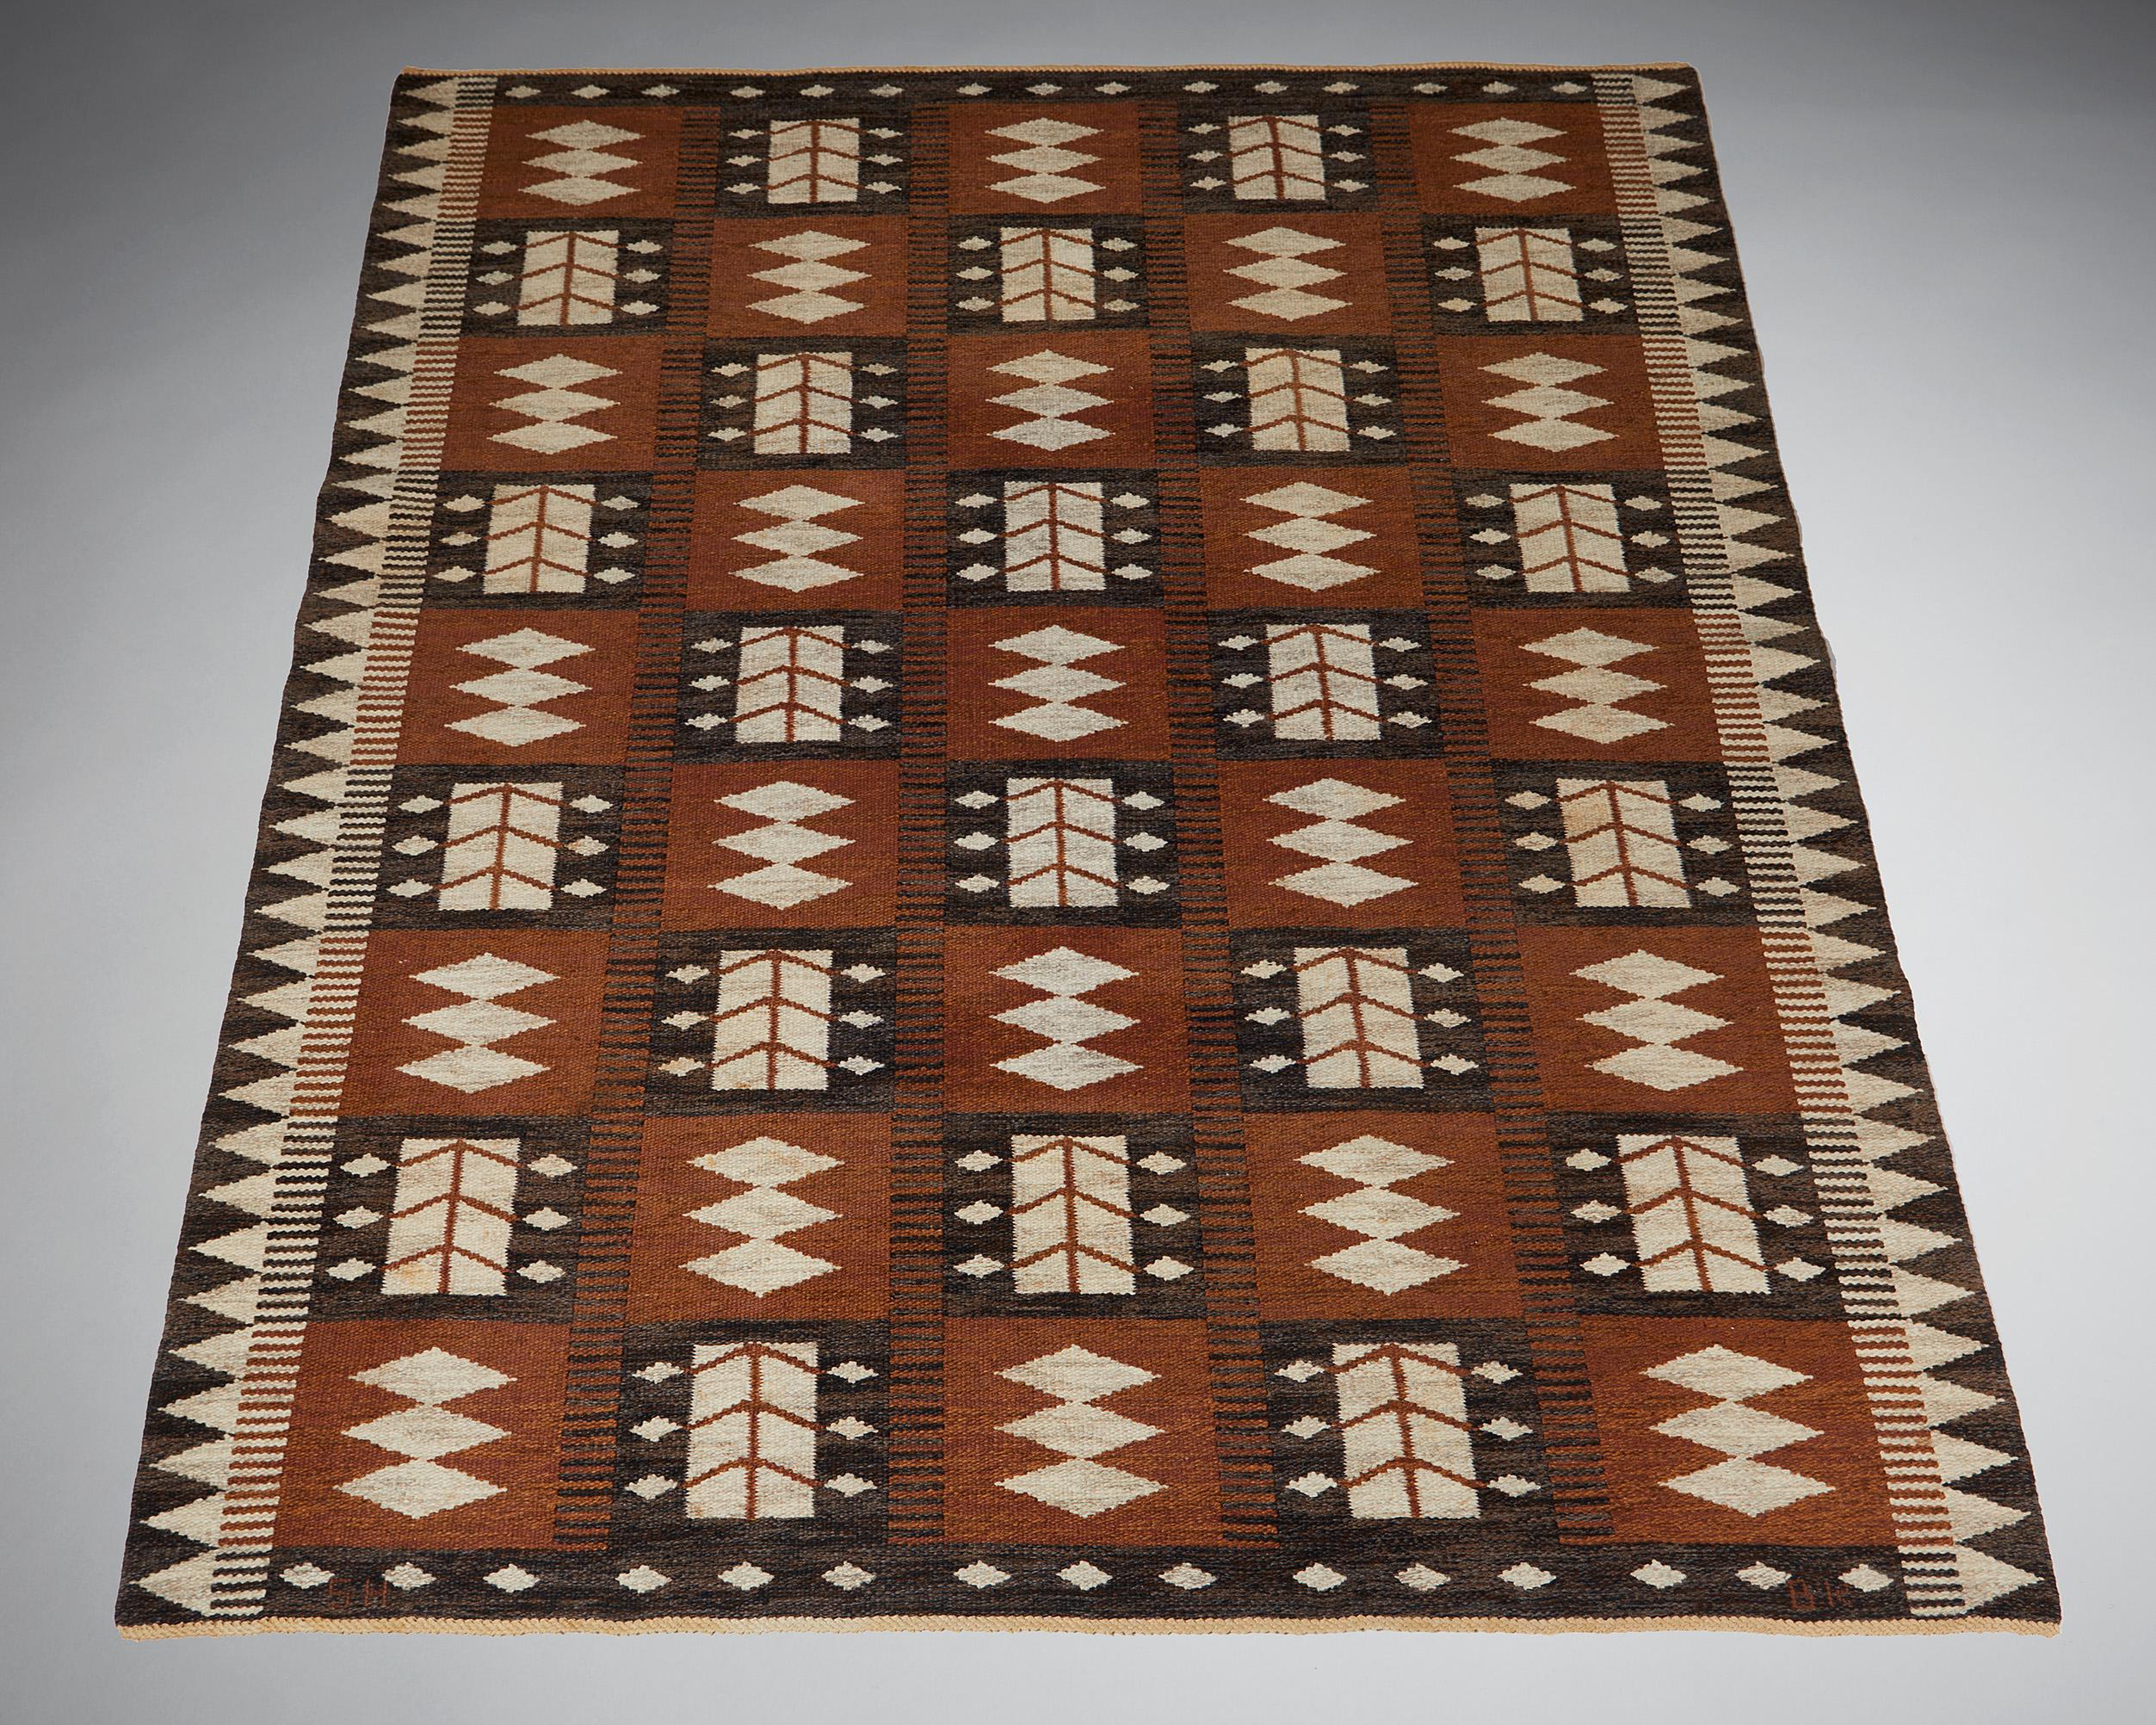 Rug designed by Berit Koenig,
Sweden, 1950s.

Flat weave.

Signed ‘BK SH’

Measurements: 
L: 240 cm / 7’ 10 1/2